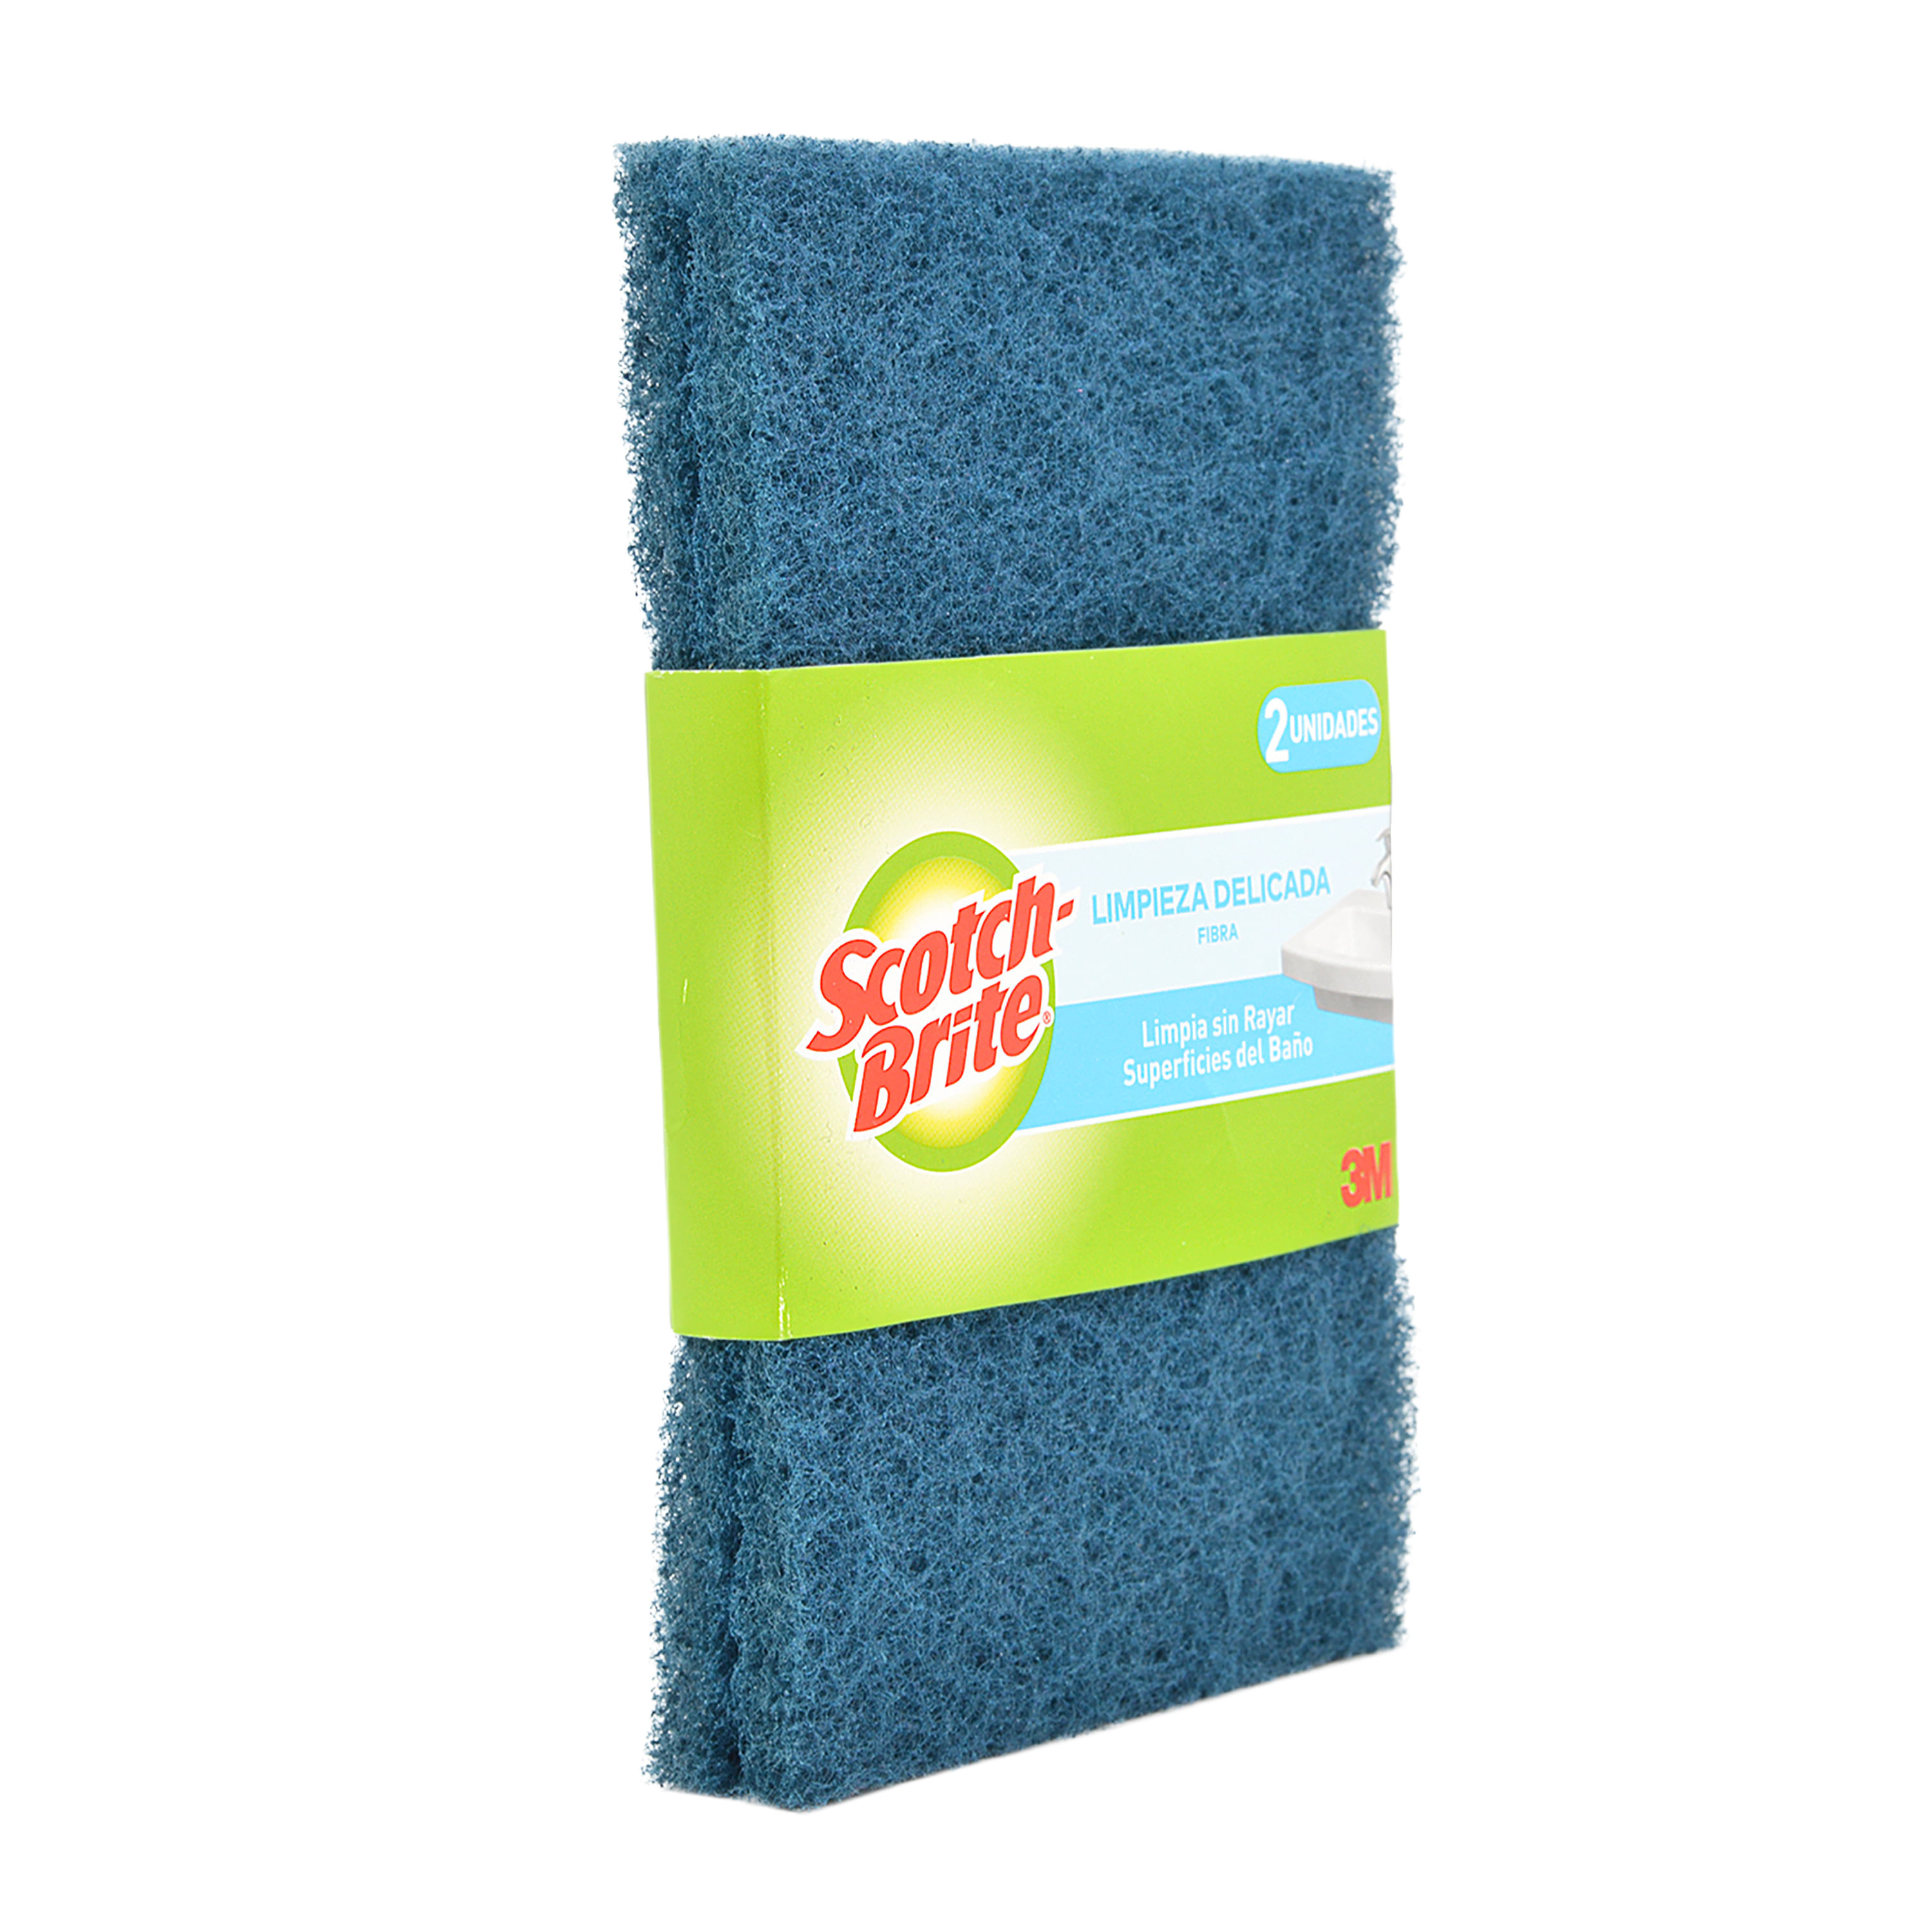 Scotch-Brite Greener Clean – Esponjas naturales para limpiar la cocina el  baño y el hogar esponjas antiarañazos seguras para utensilios de cocina –  Yaxa Colombia